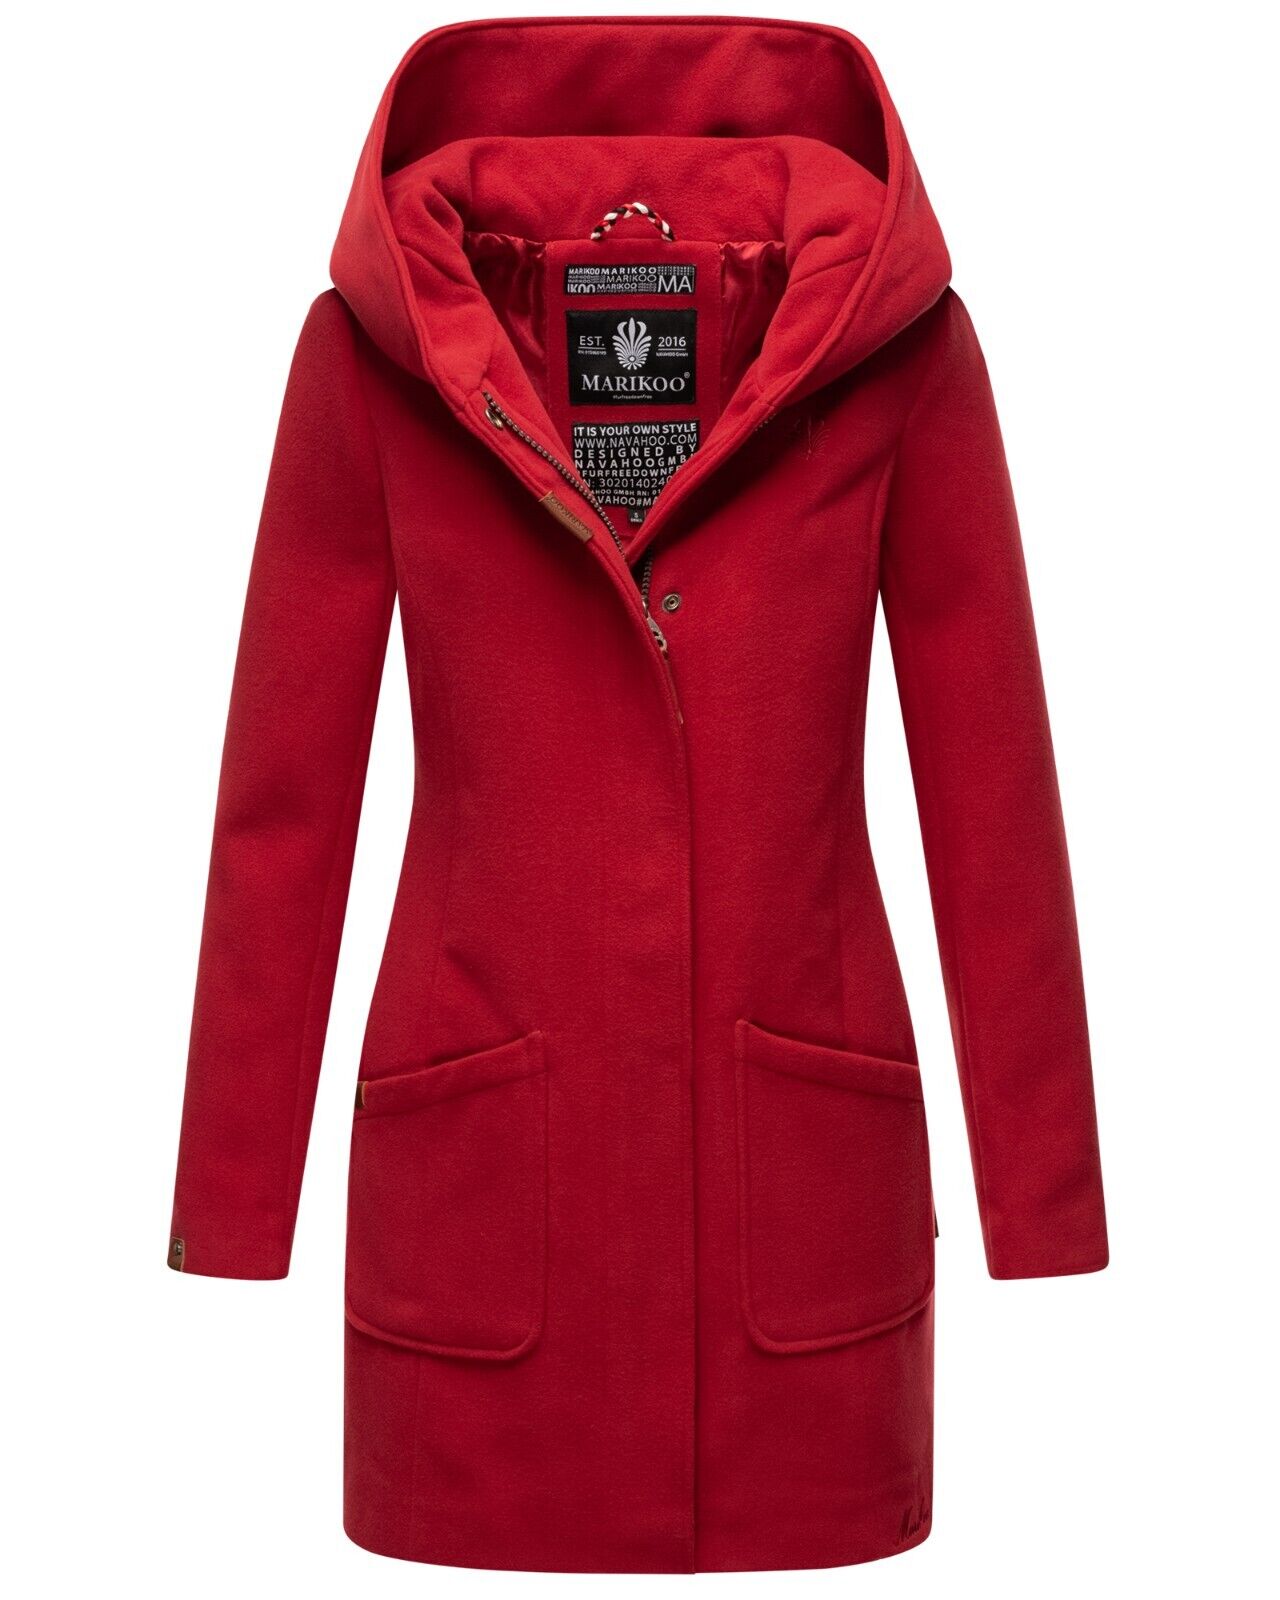 Marikoo Damen Winter | Trenchcoat Rot Wintermantel Maikoo BrandsStreet